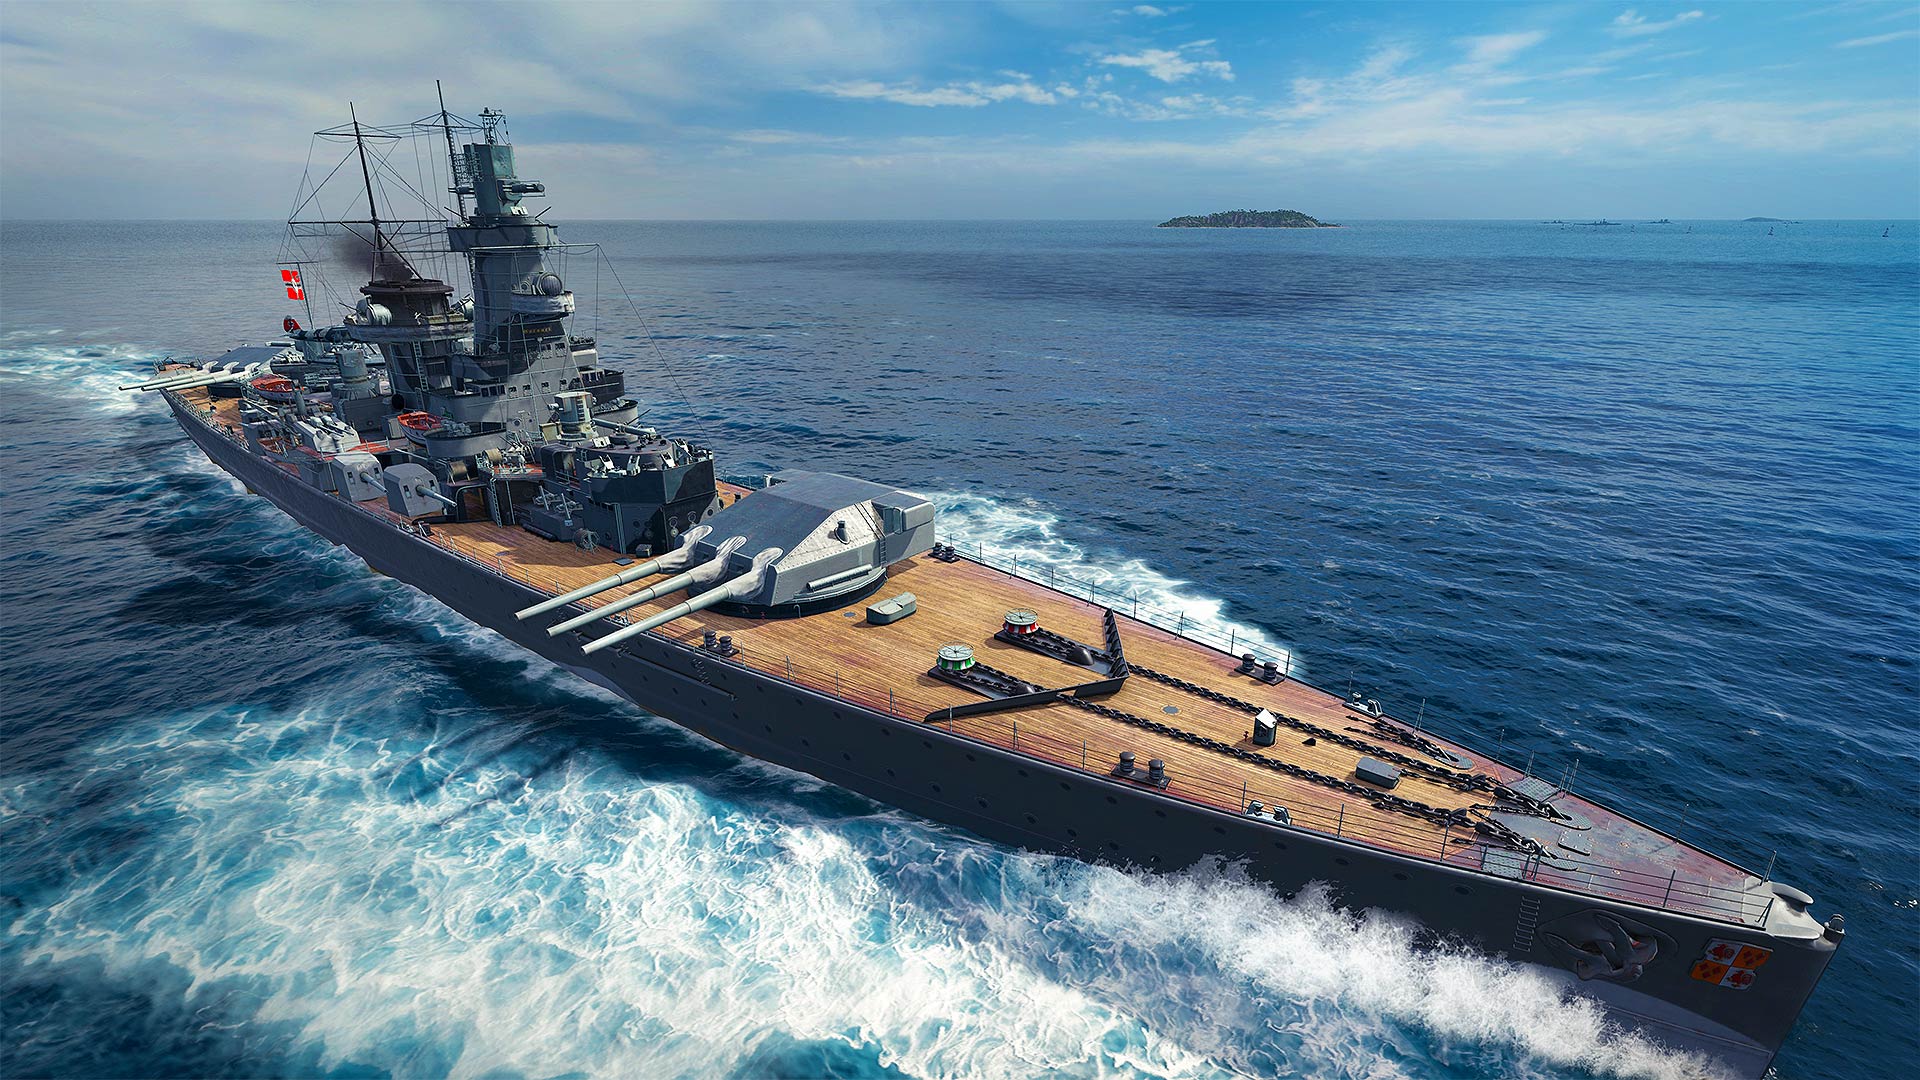 World of Warships: Legends - Pocket Battleship on PS4 | Official ...